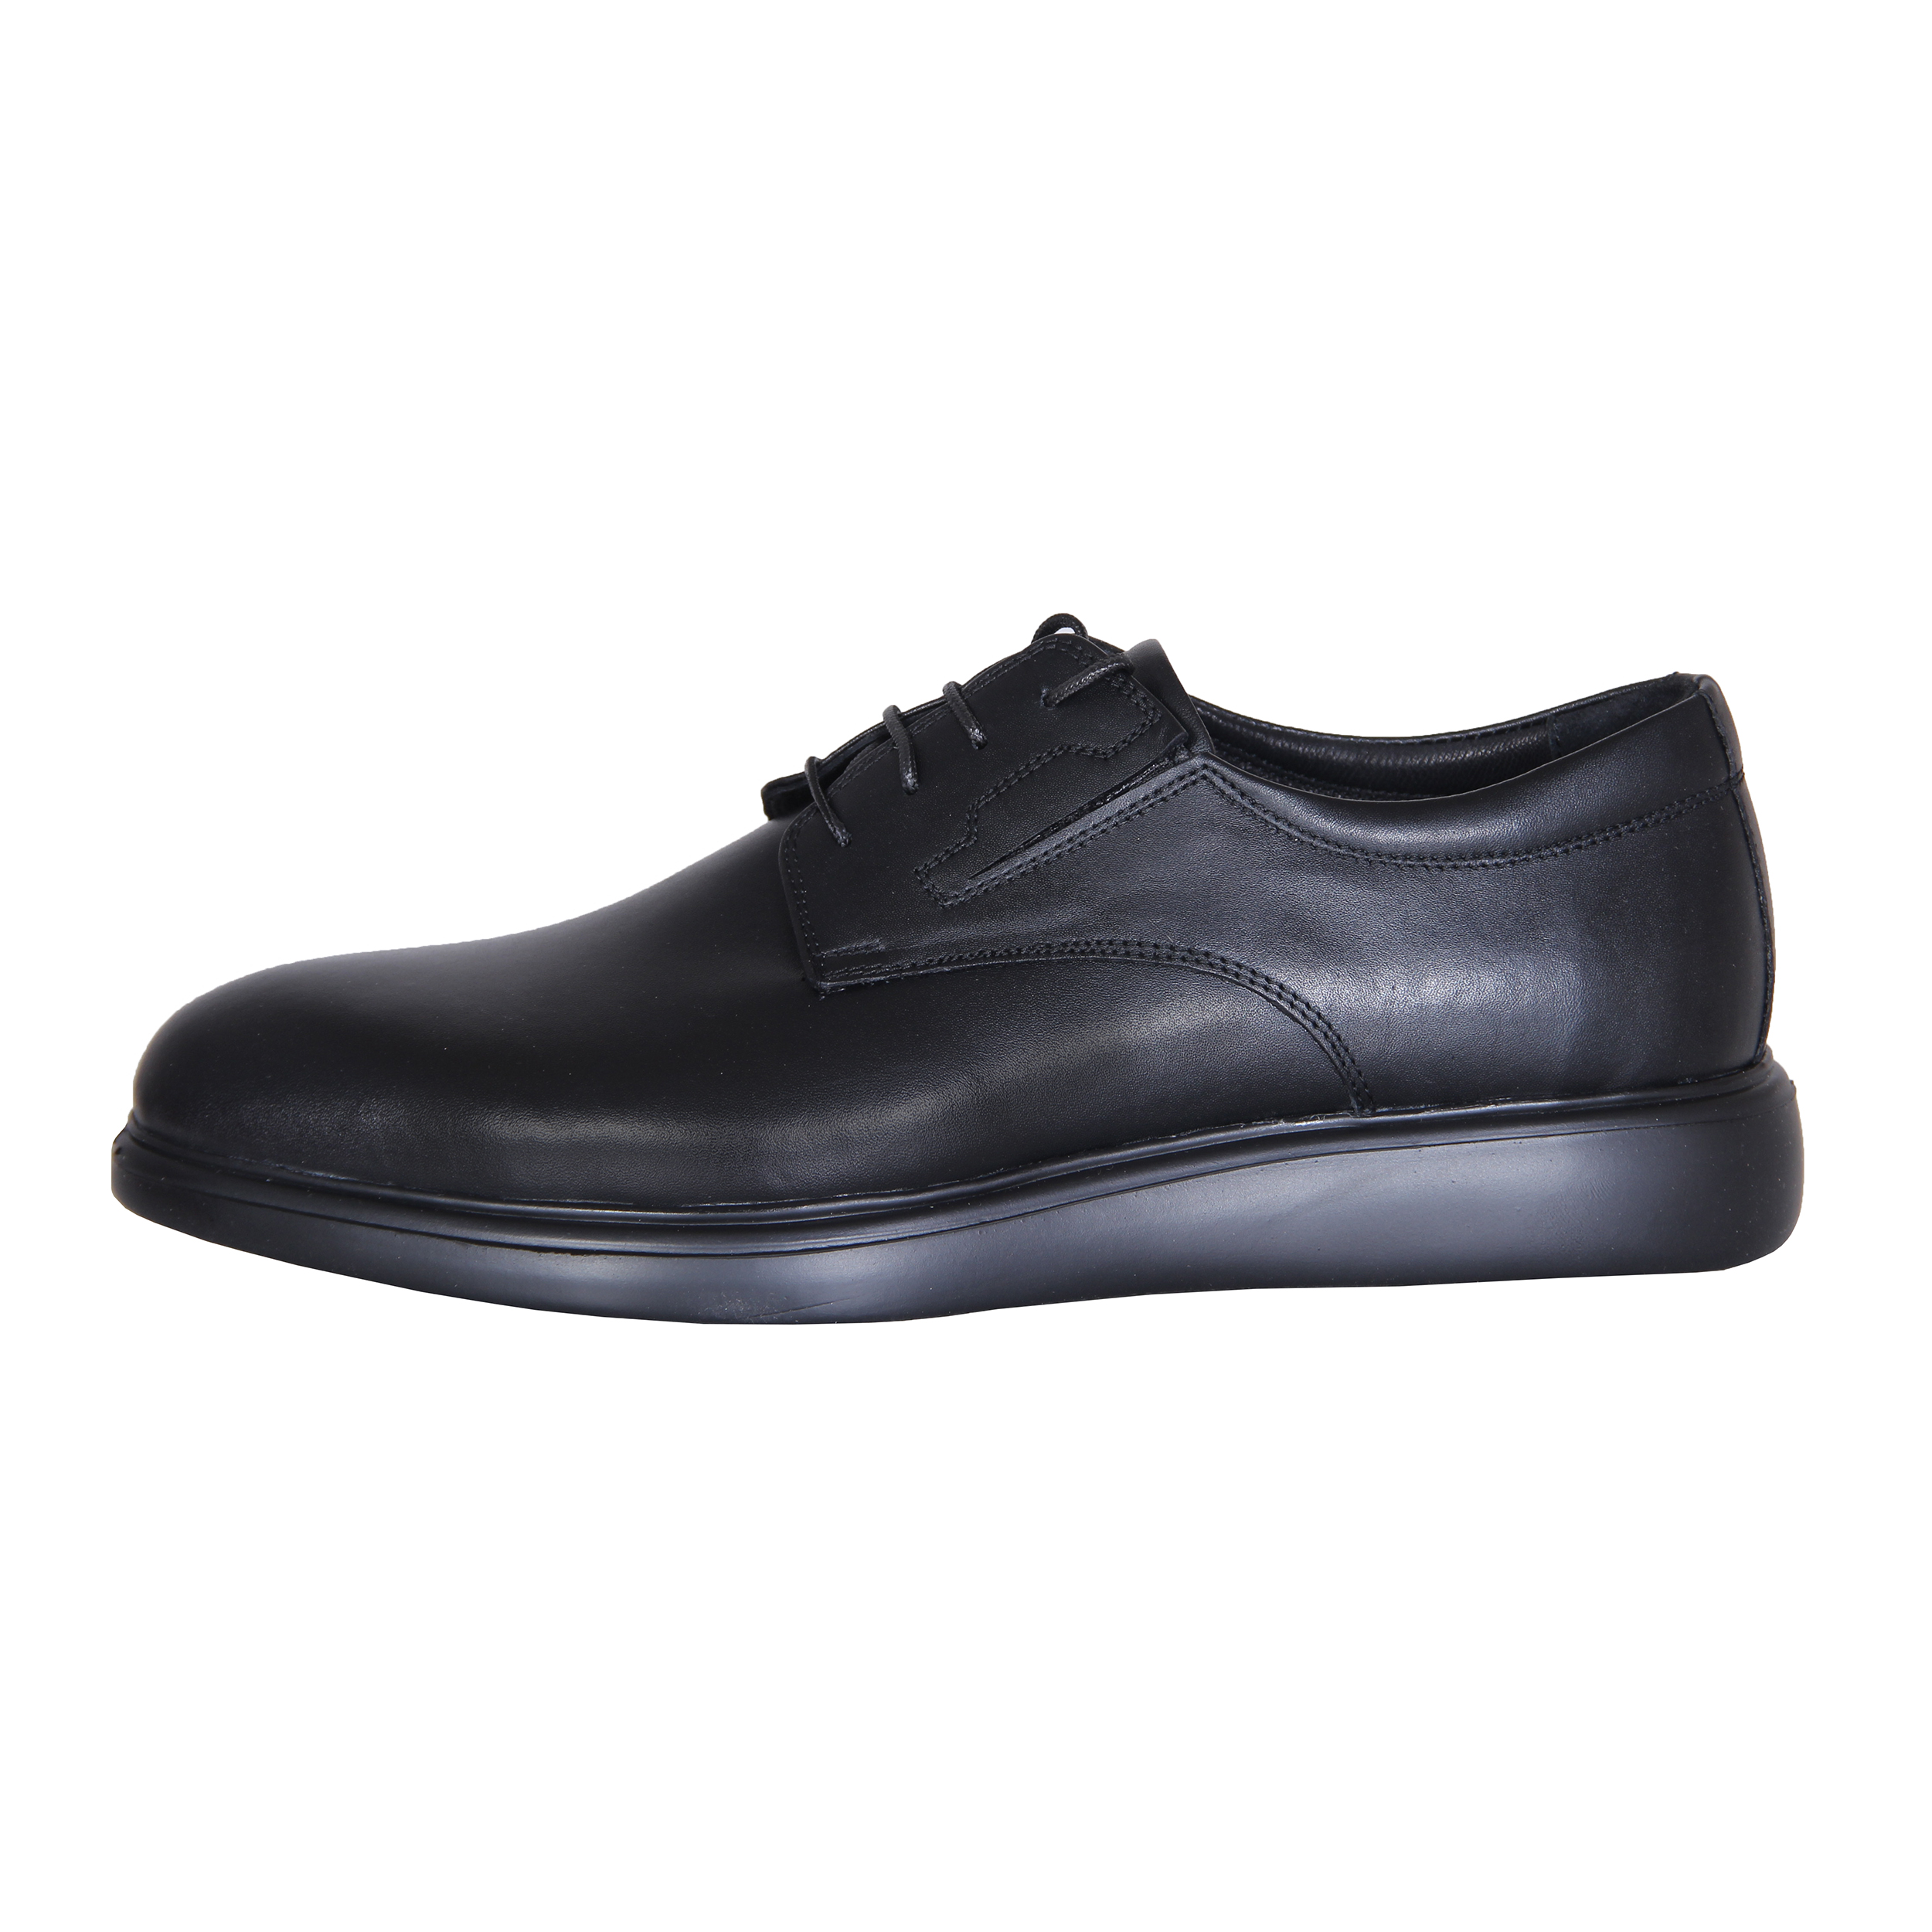 SHAHRECHARM leather men's casual shoes , MT61-1 Model